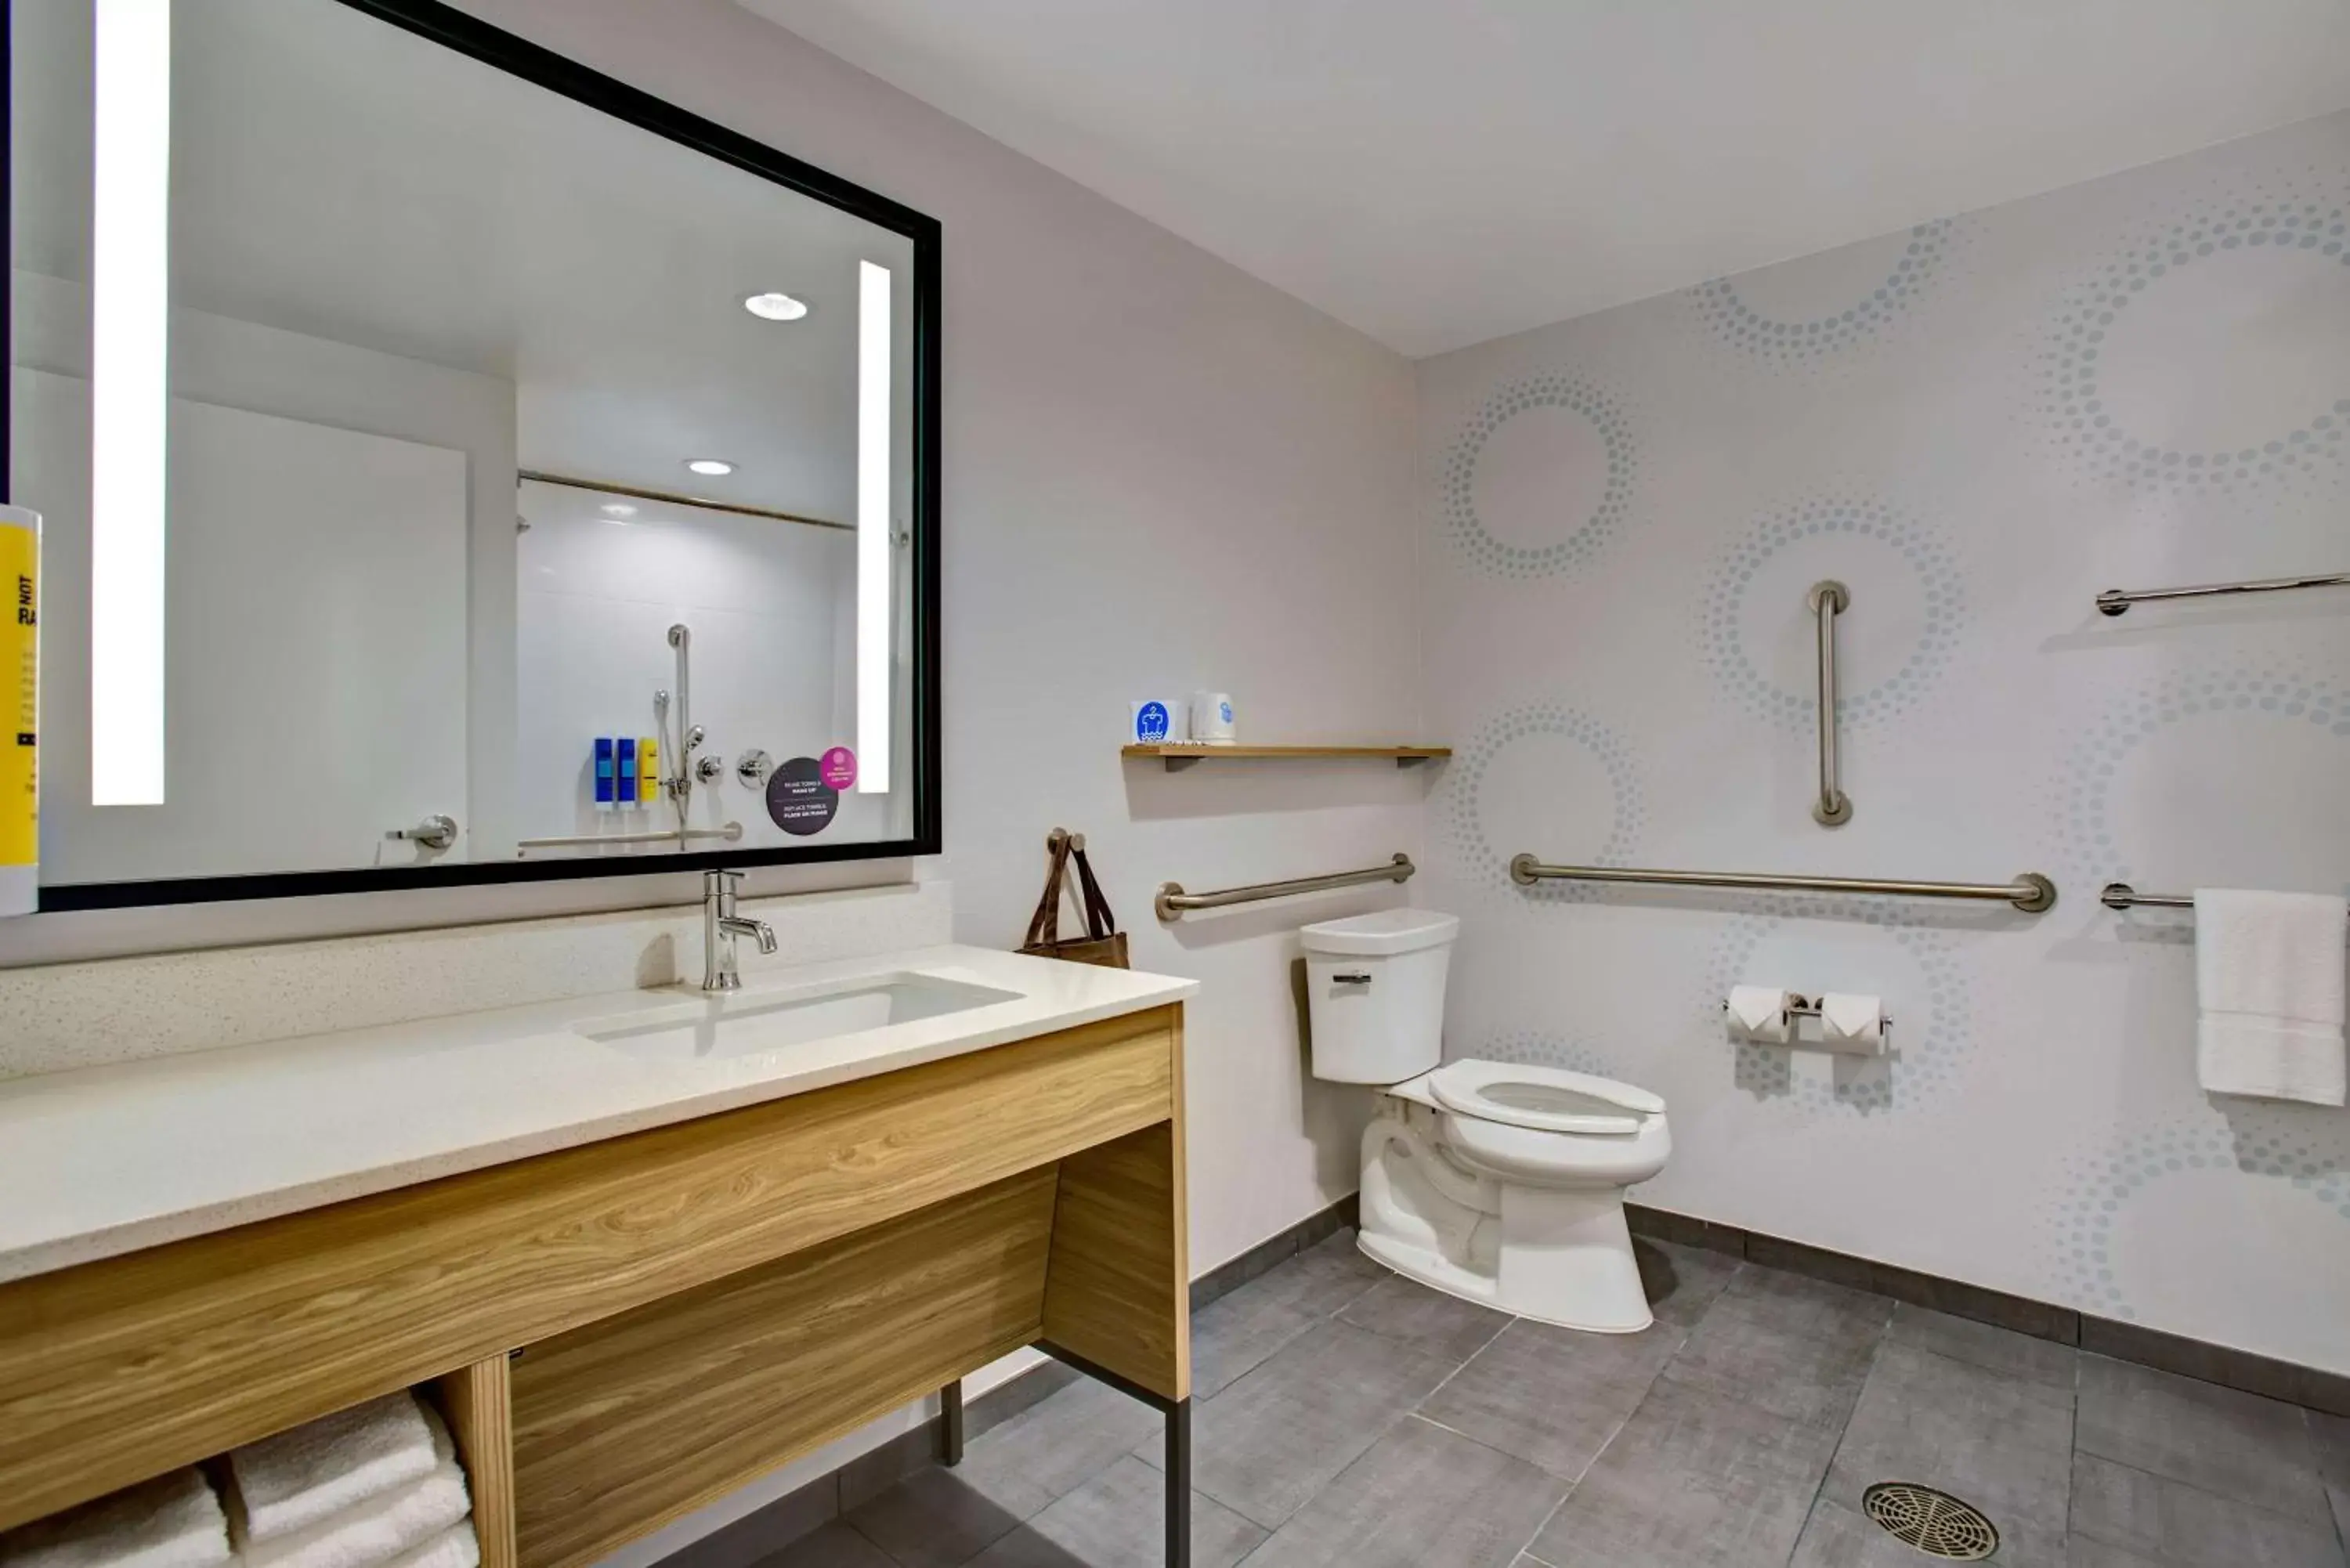 Bathroom in Tru By Hilton Northlake Fort Worth, Tx